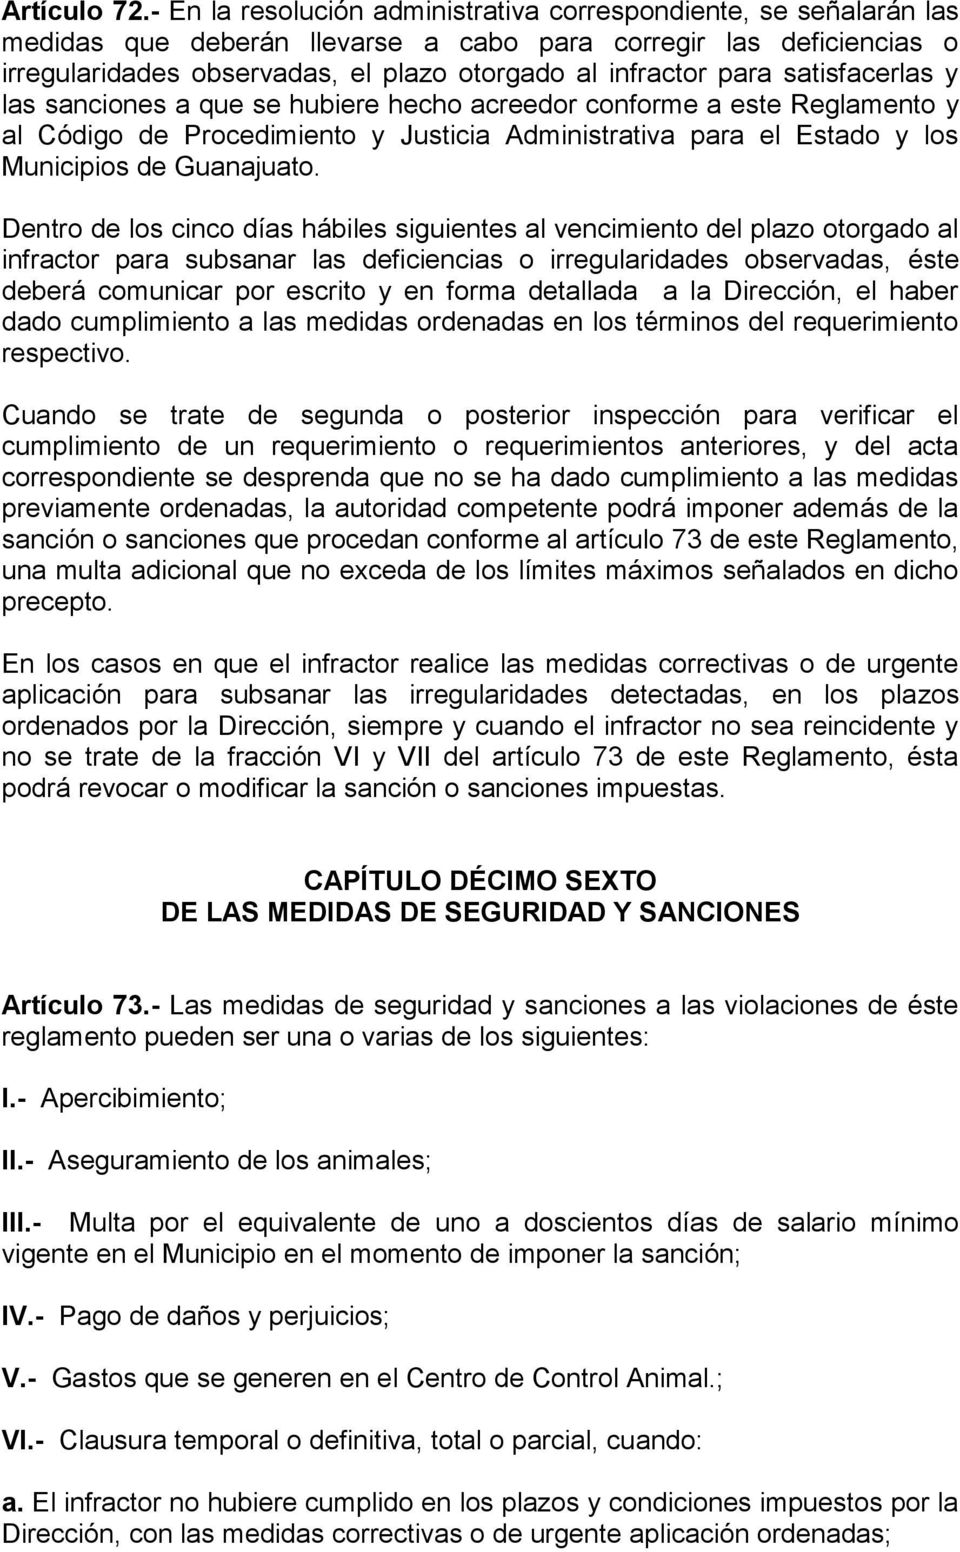 para satisfacerlas y las sanciones a que se hubiere hecho acreedor conforme a este Reglamento y al Código de Procedimiento y Justicia Administrativa para el Estado y los Municipios de Guanajuato.